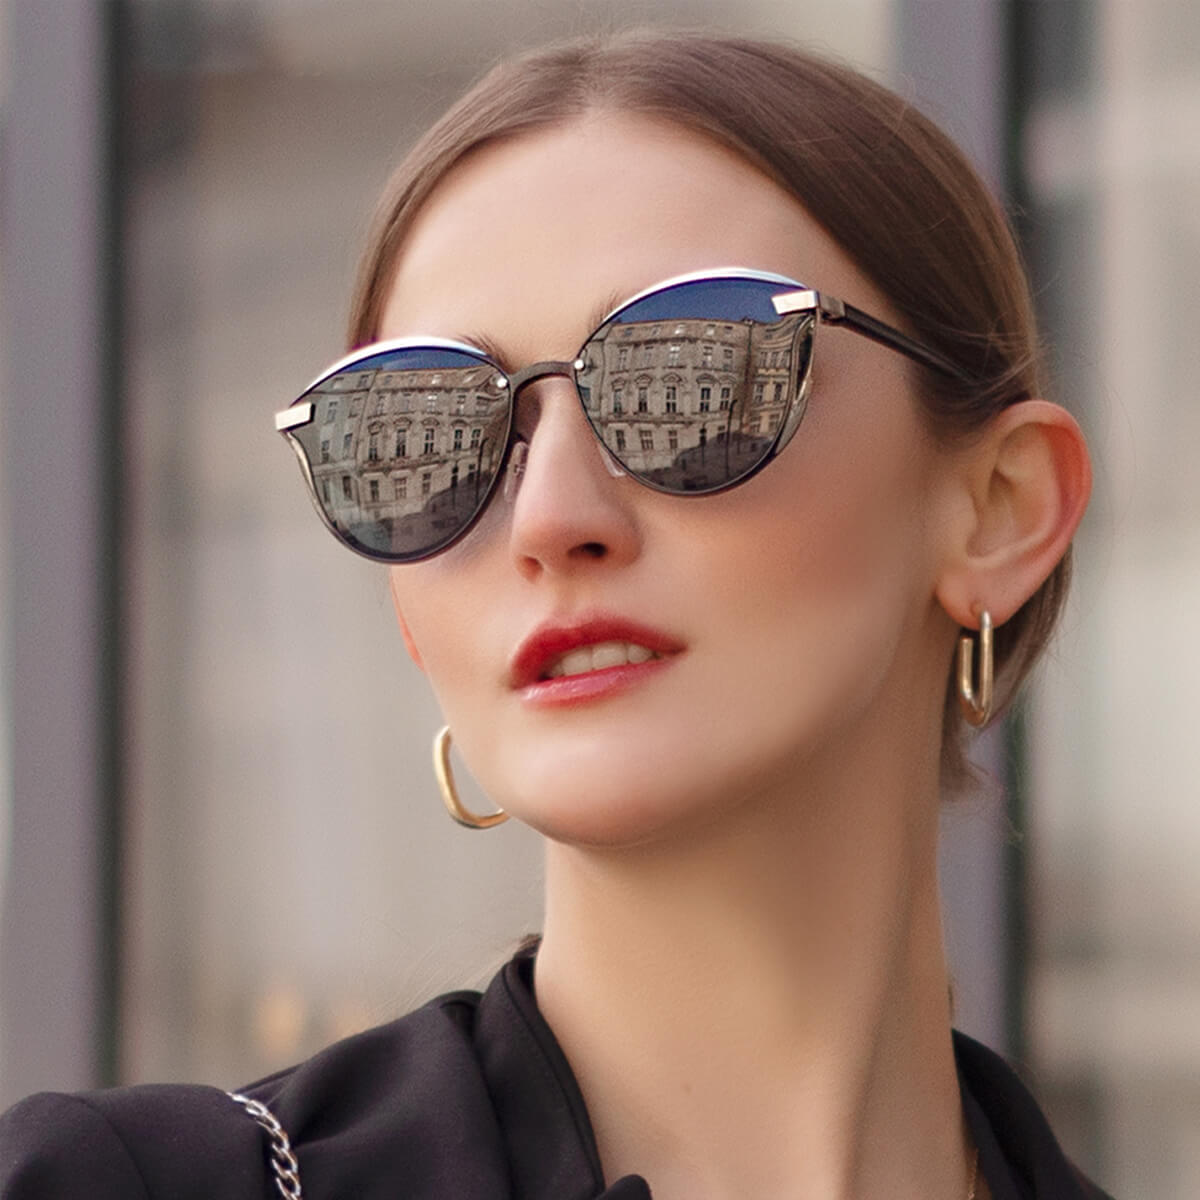 Óculos de Sol Feminino com armação em liga metálica e polímeros plásticos de alta densidade, com lentes polarizadas com proteção UV400.